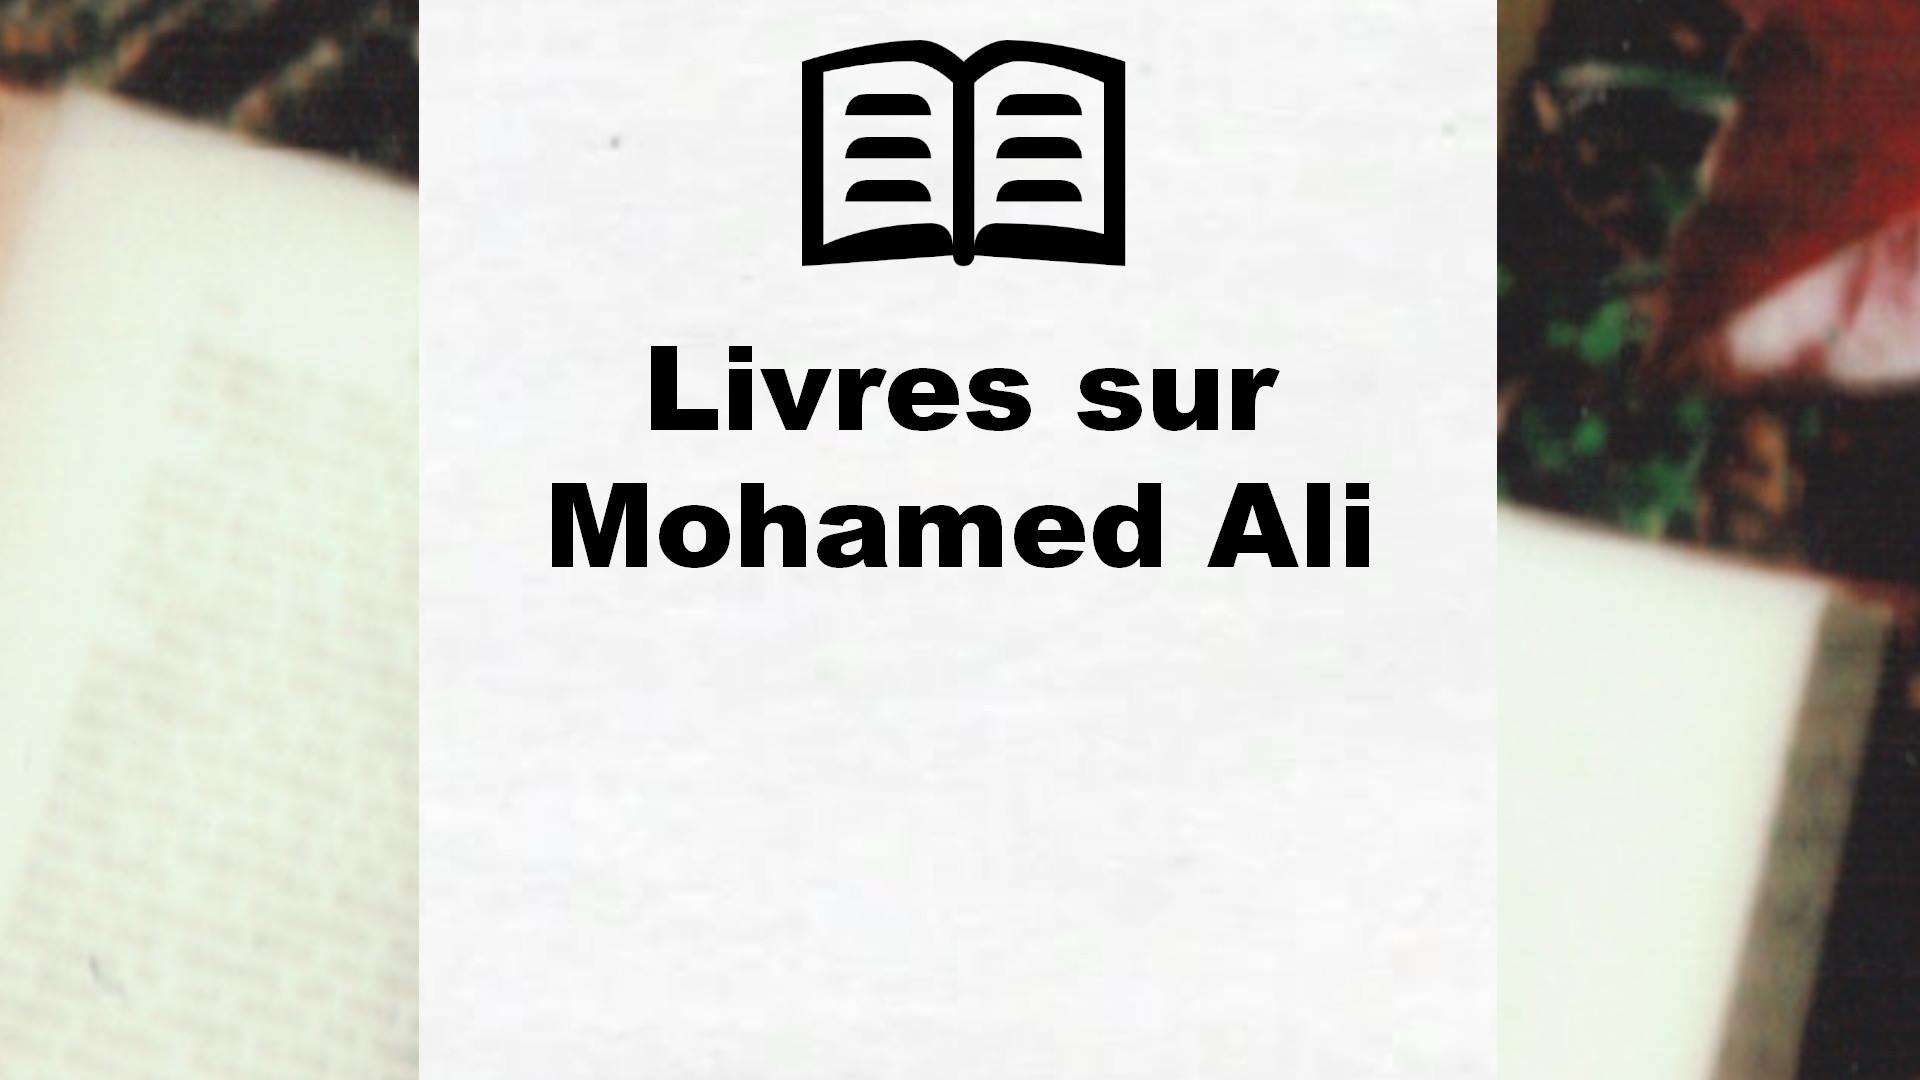 Livres sur Mohamed Ali